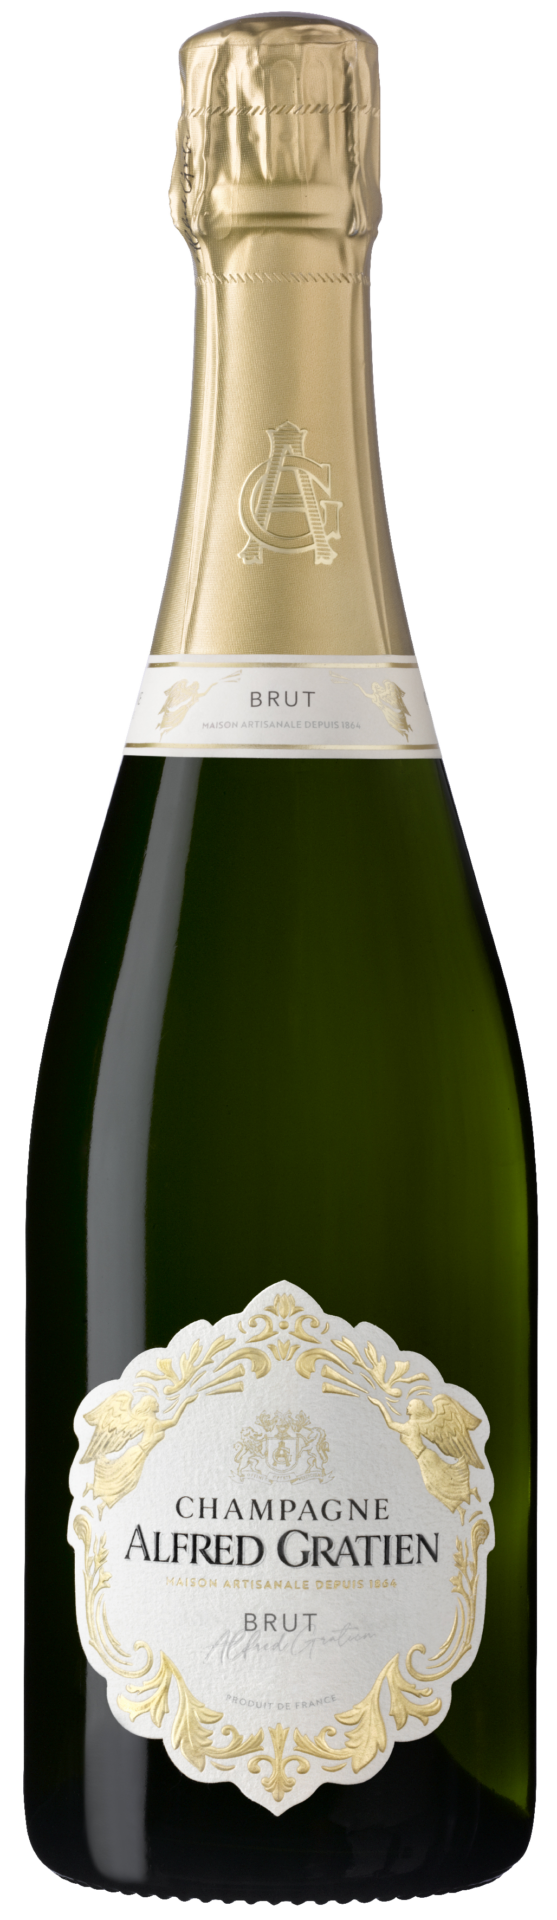 La bouteille de champagne brut d'Alfred Gratien.